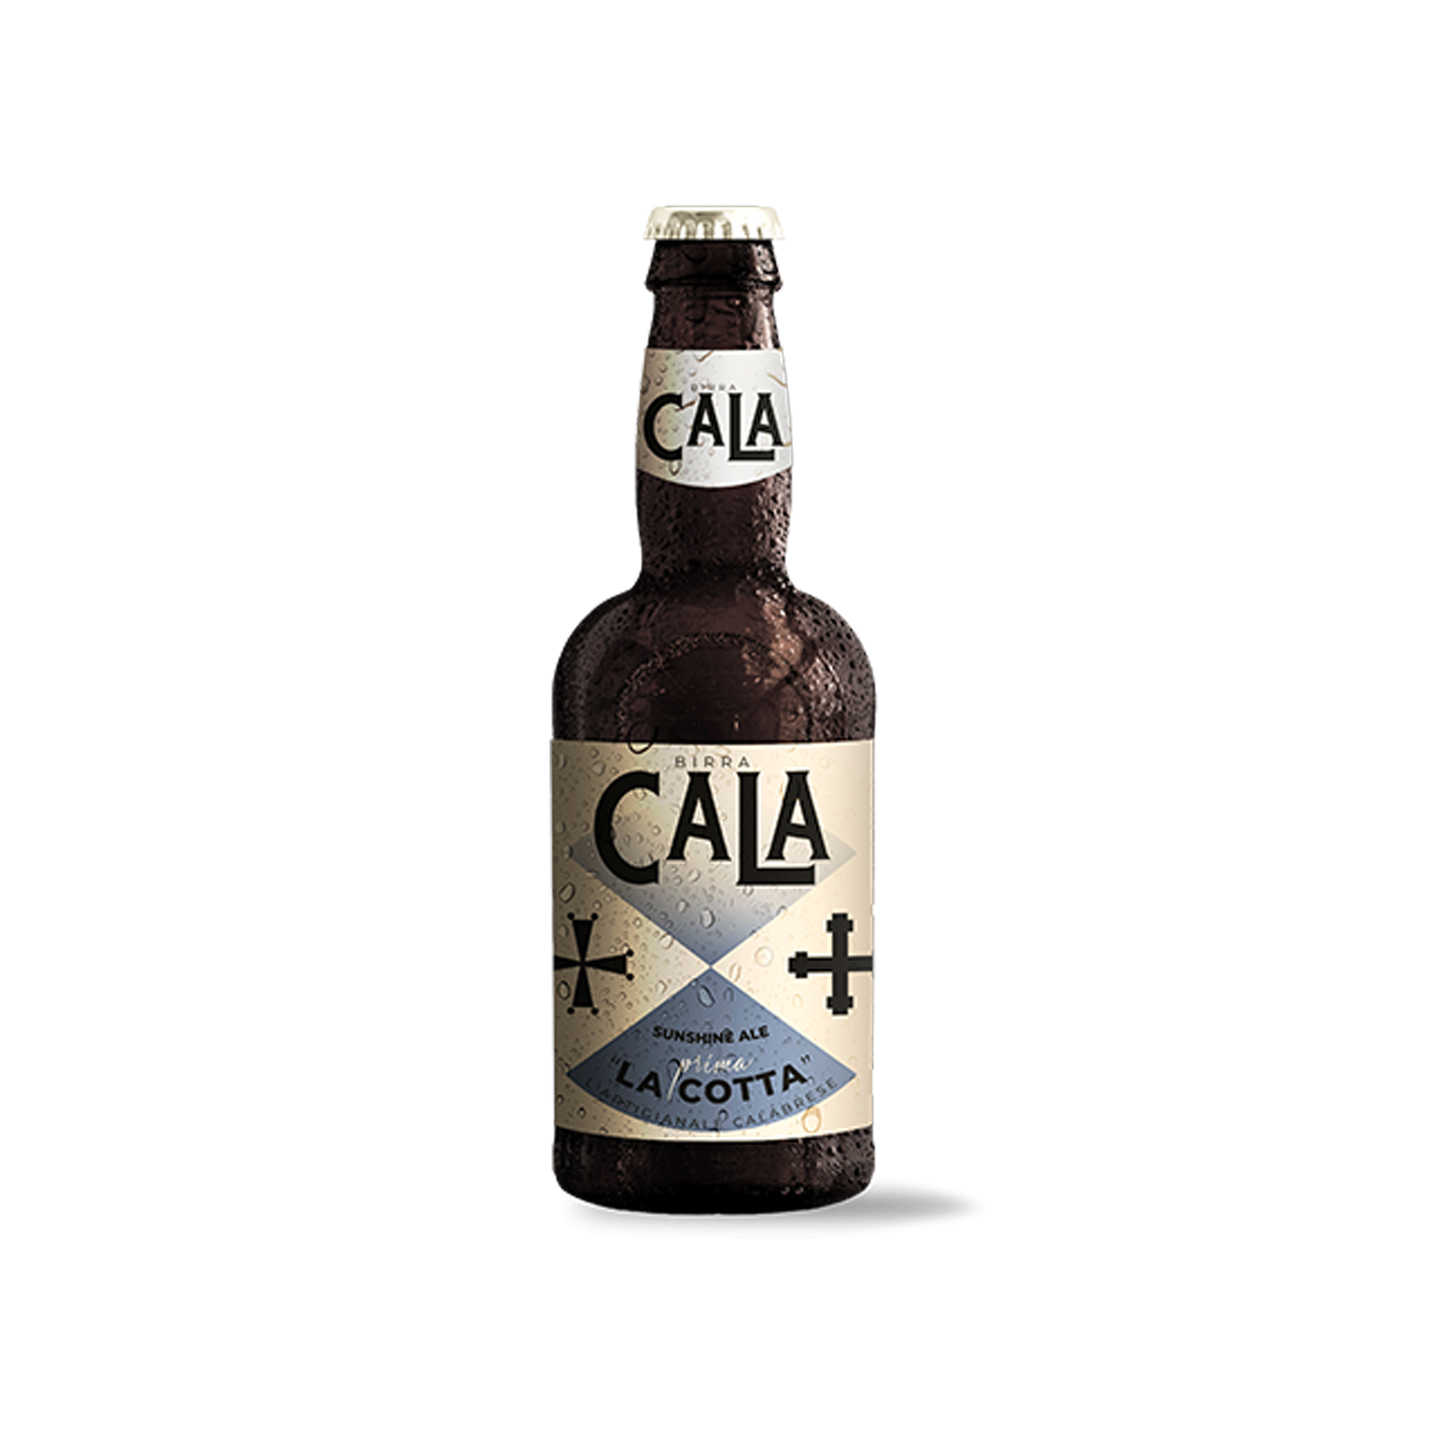 La Cotta - Birra Cala